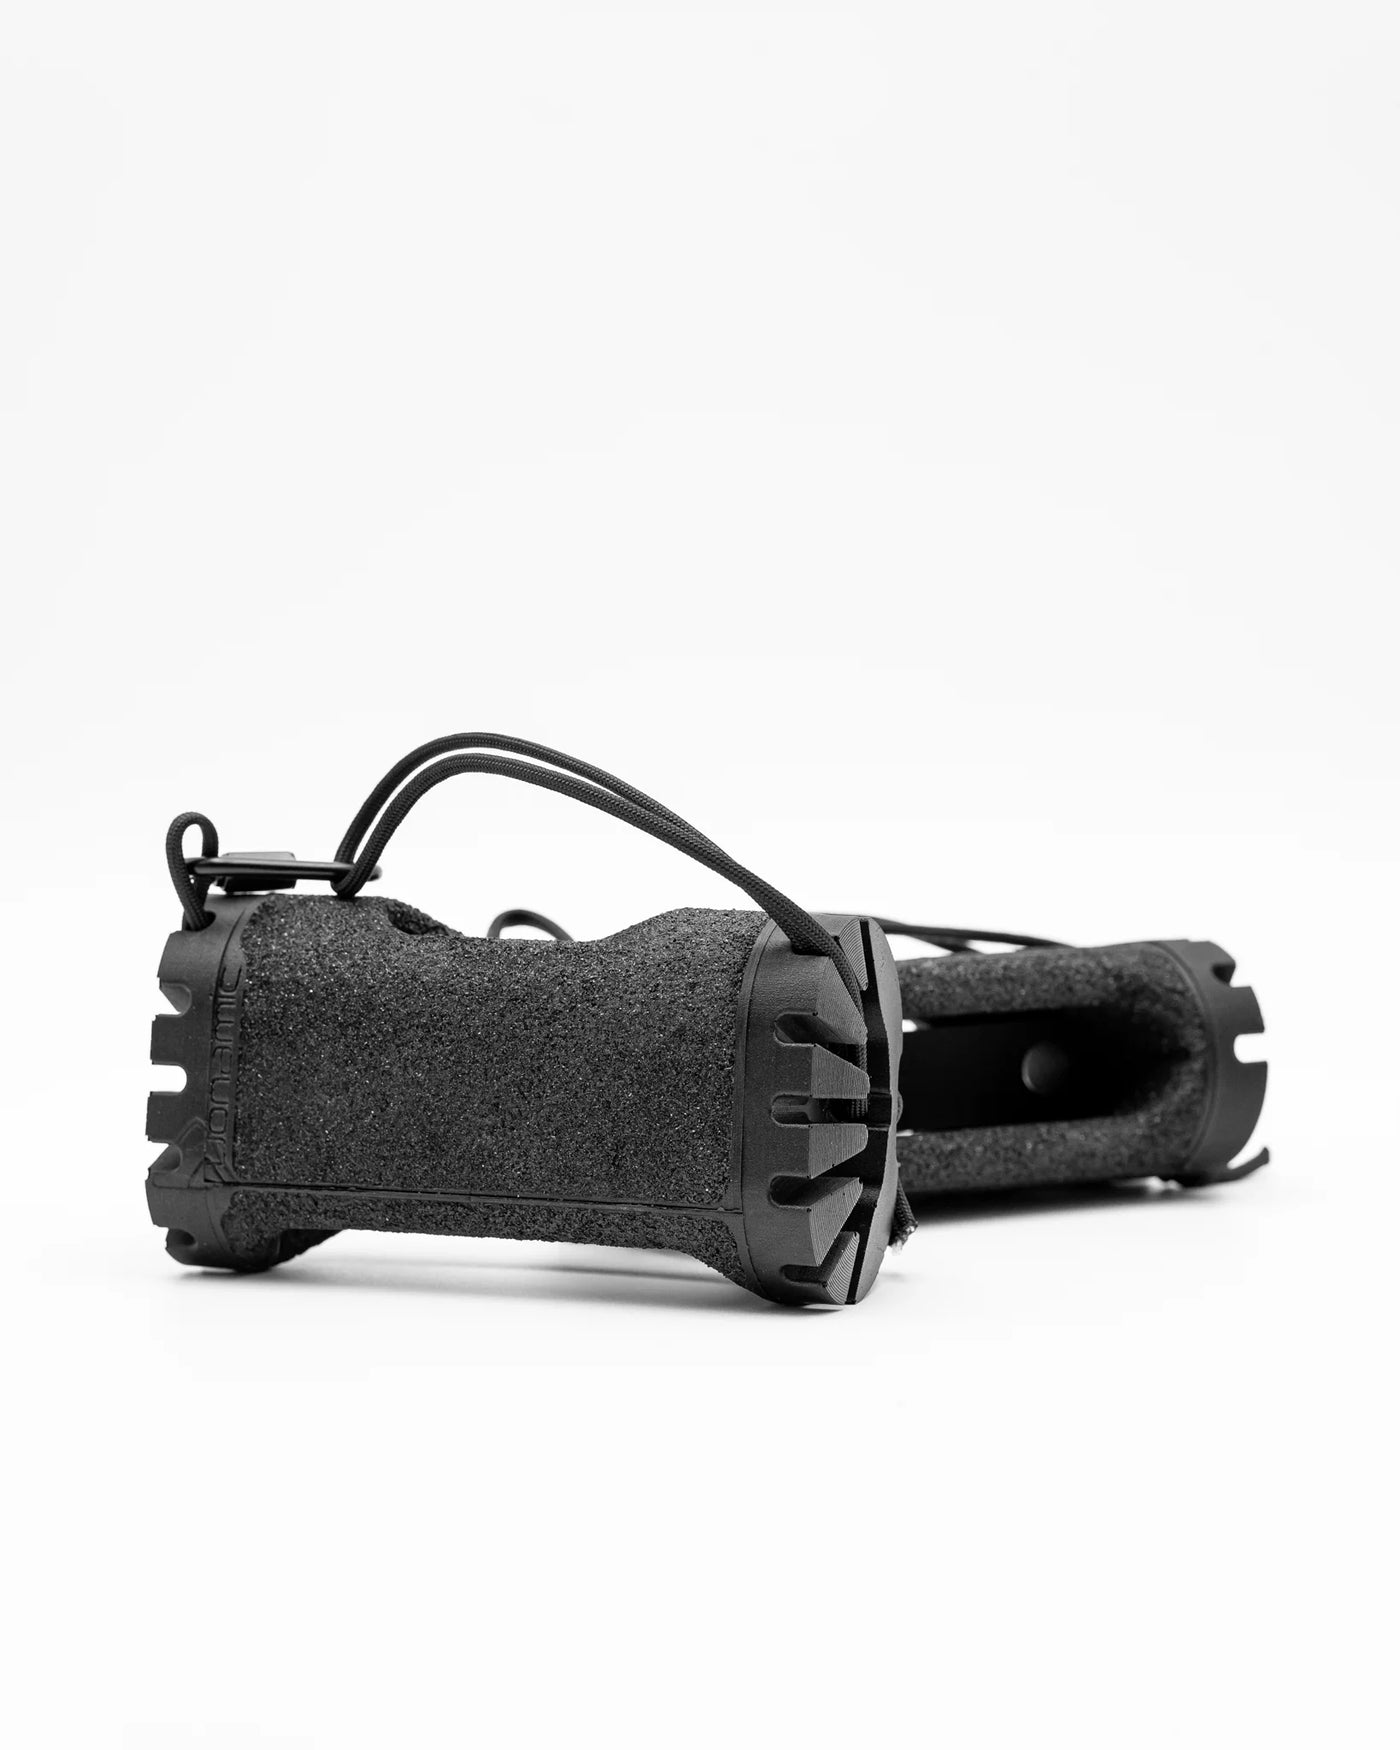 Duonamic Ultimate Grip Package | Eleviia + Powrholds + Travel Bags